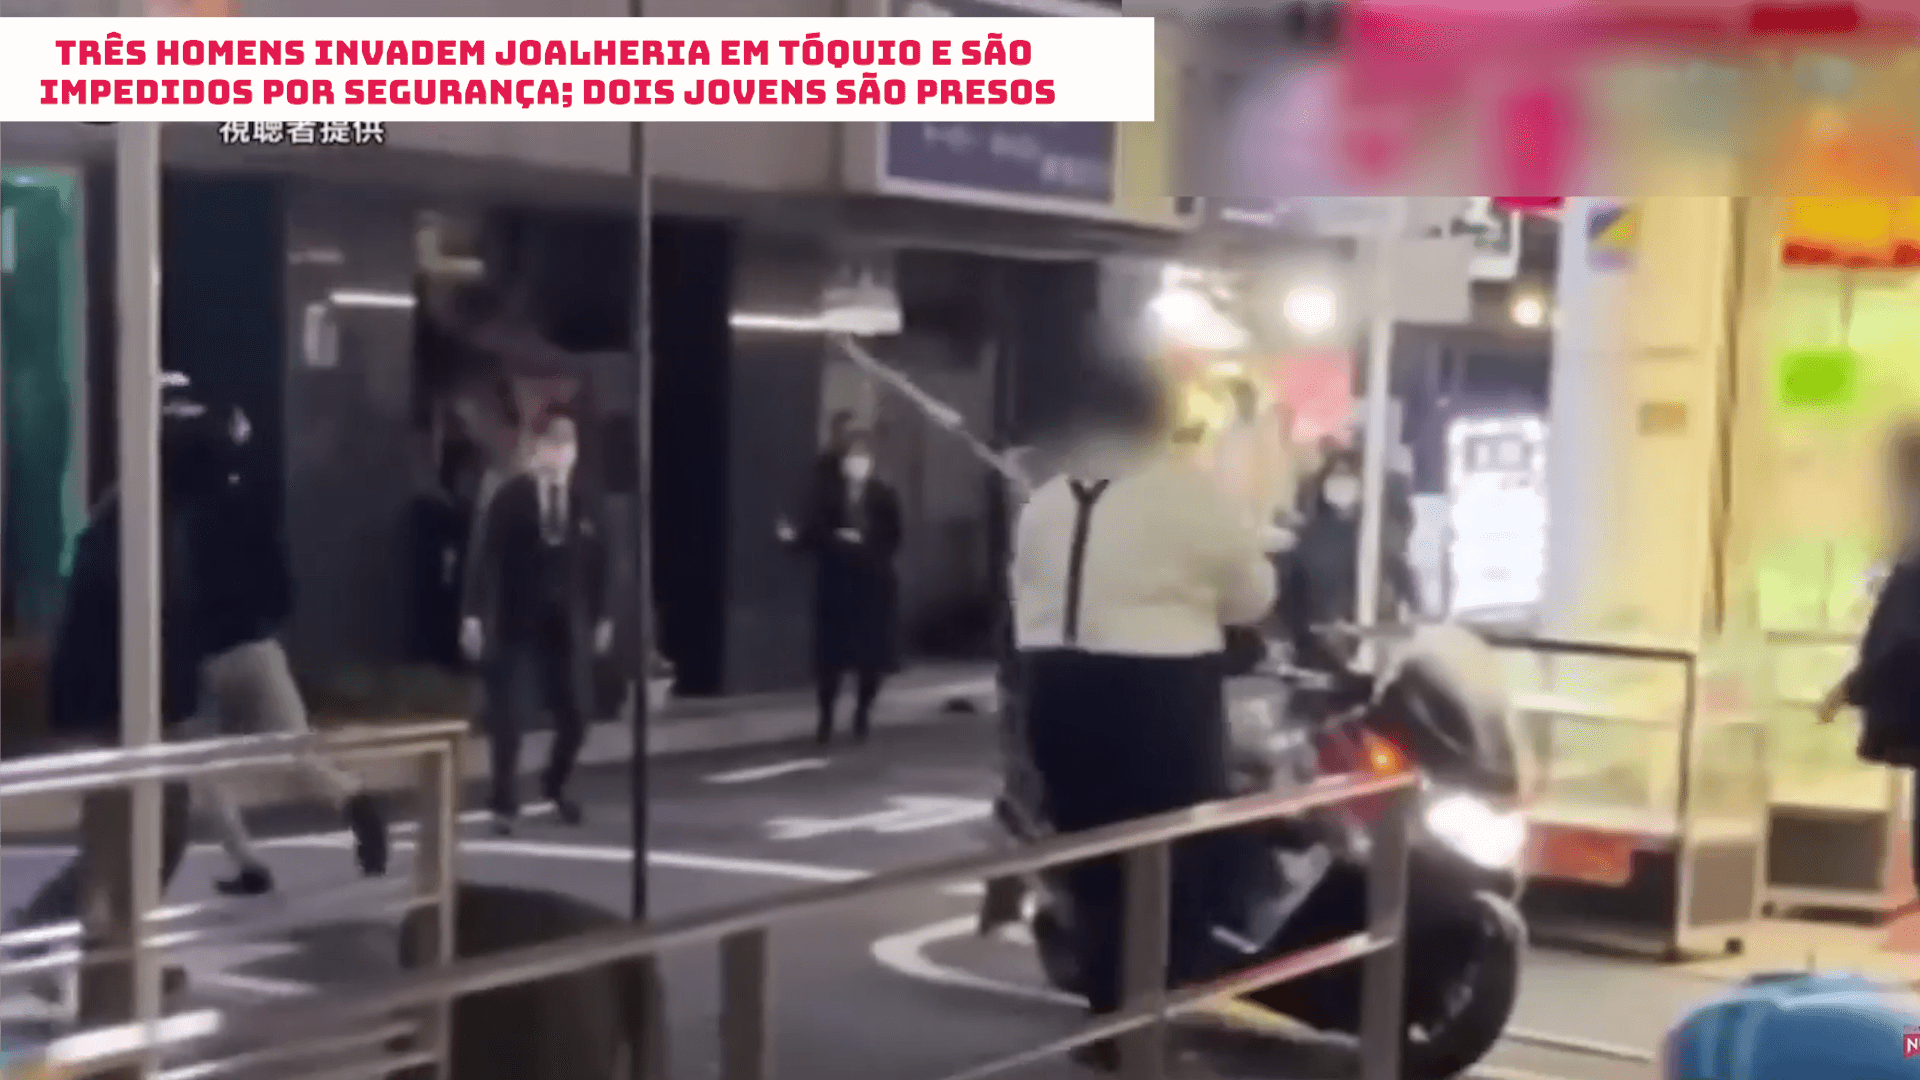 Três homens invadem joalheria em Tóquio e são impedidos por segurança; dois jovens são presos 